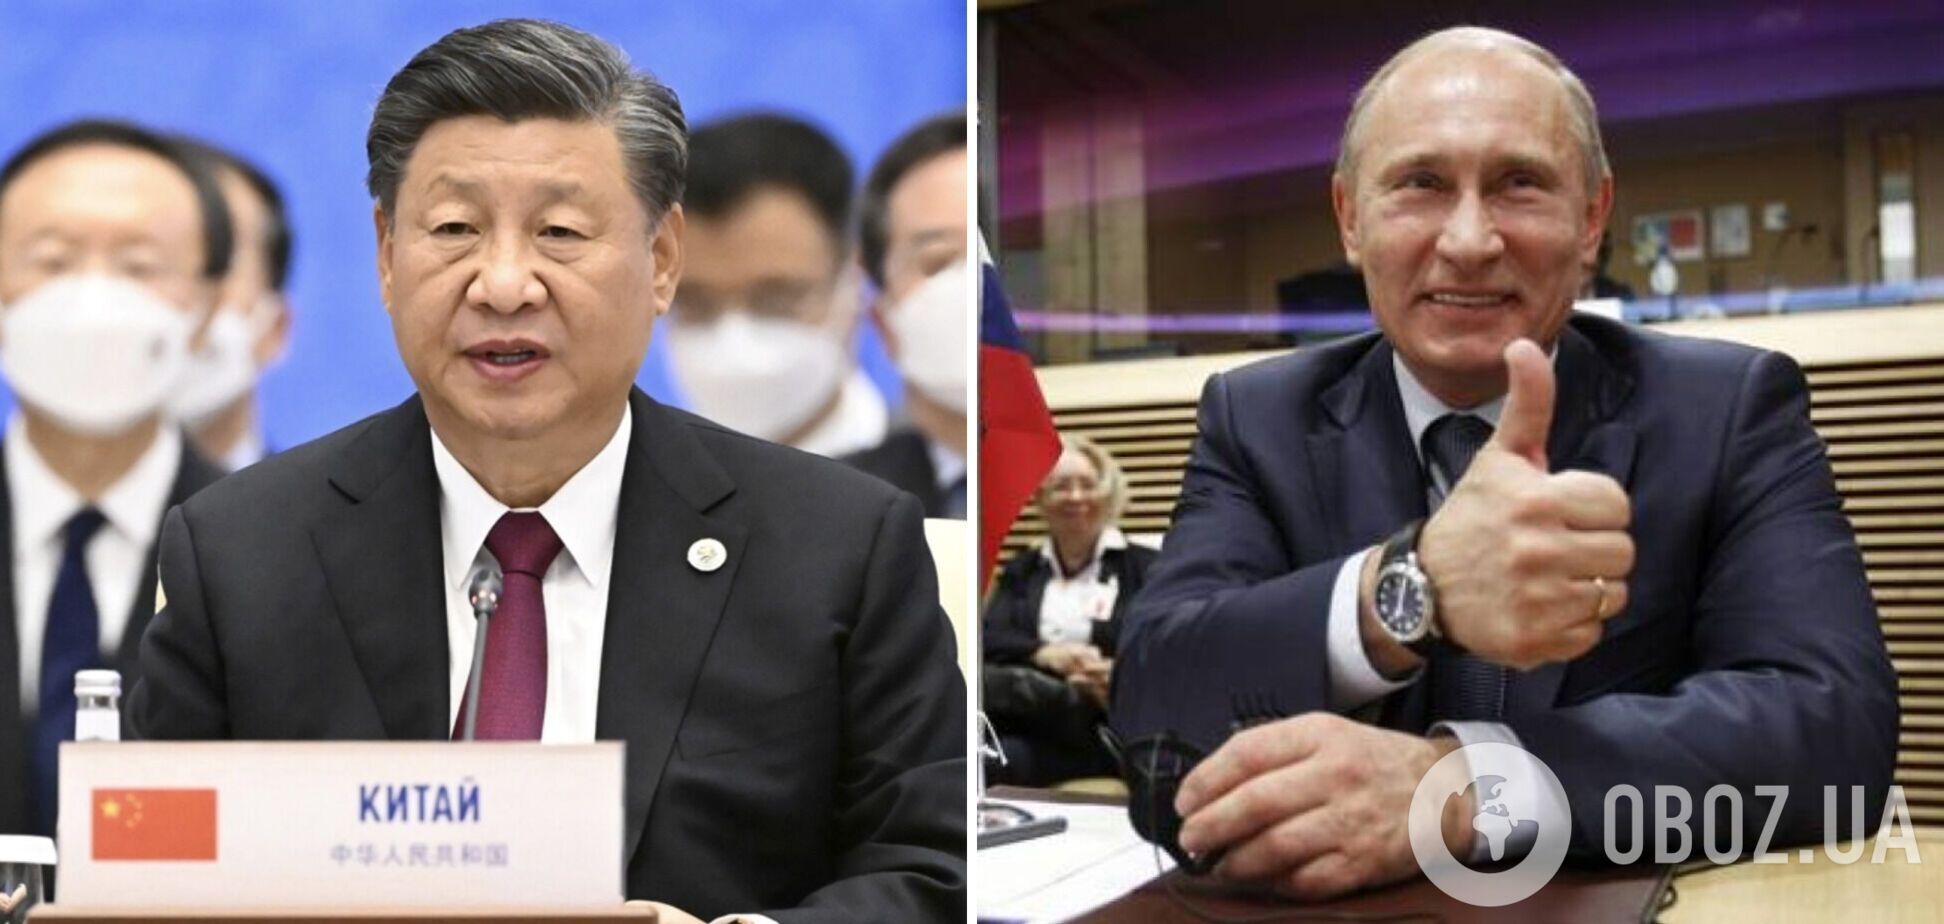 Сі Цзіньпін закликав до мирних переговорів для припинення війни в Україні, але не засудив вторгнення РФ